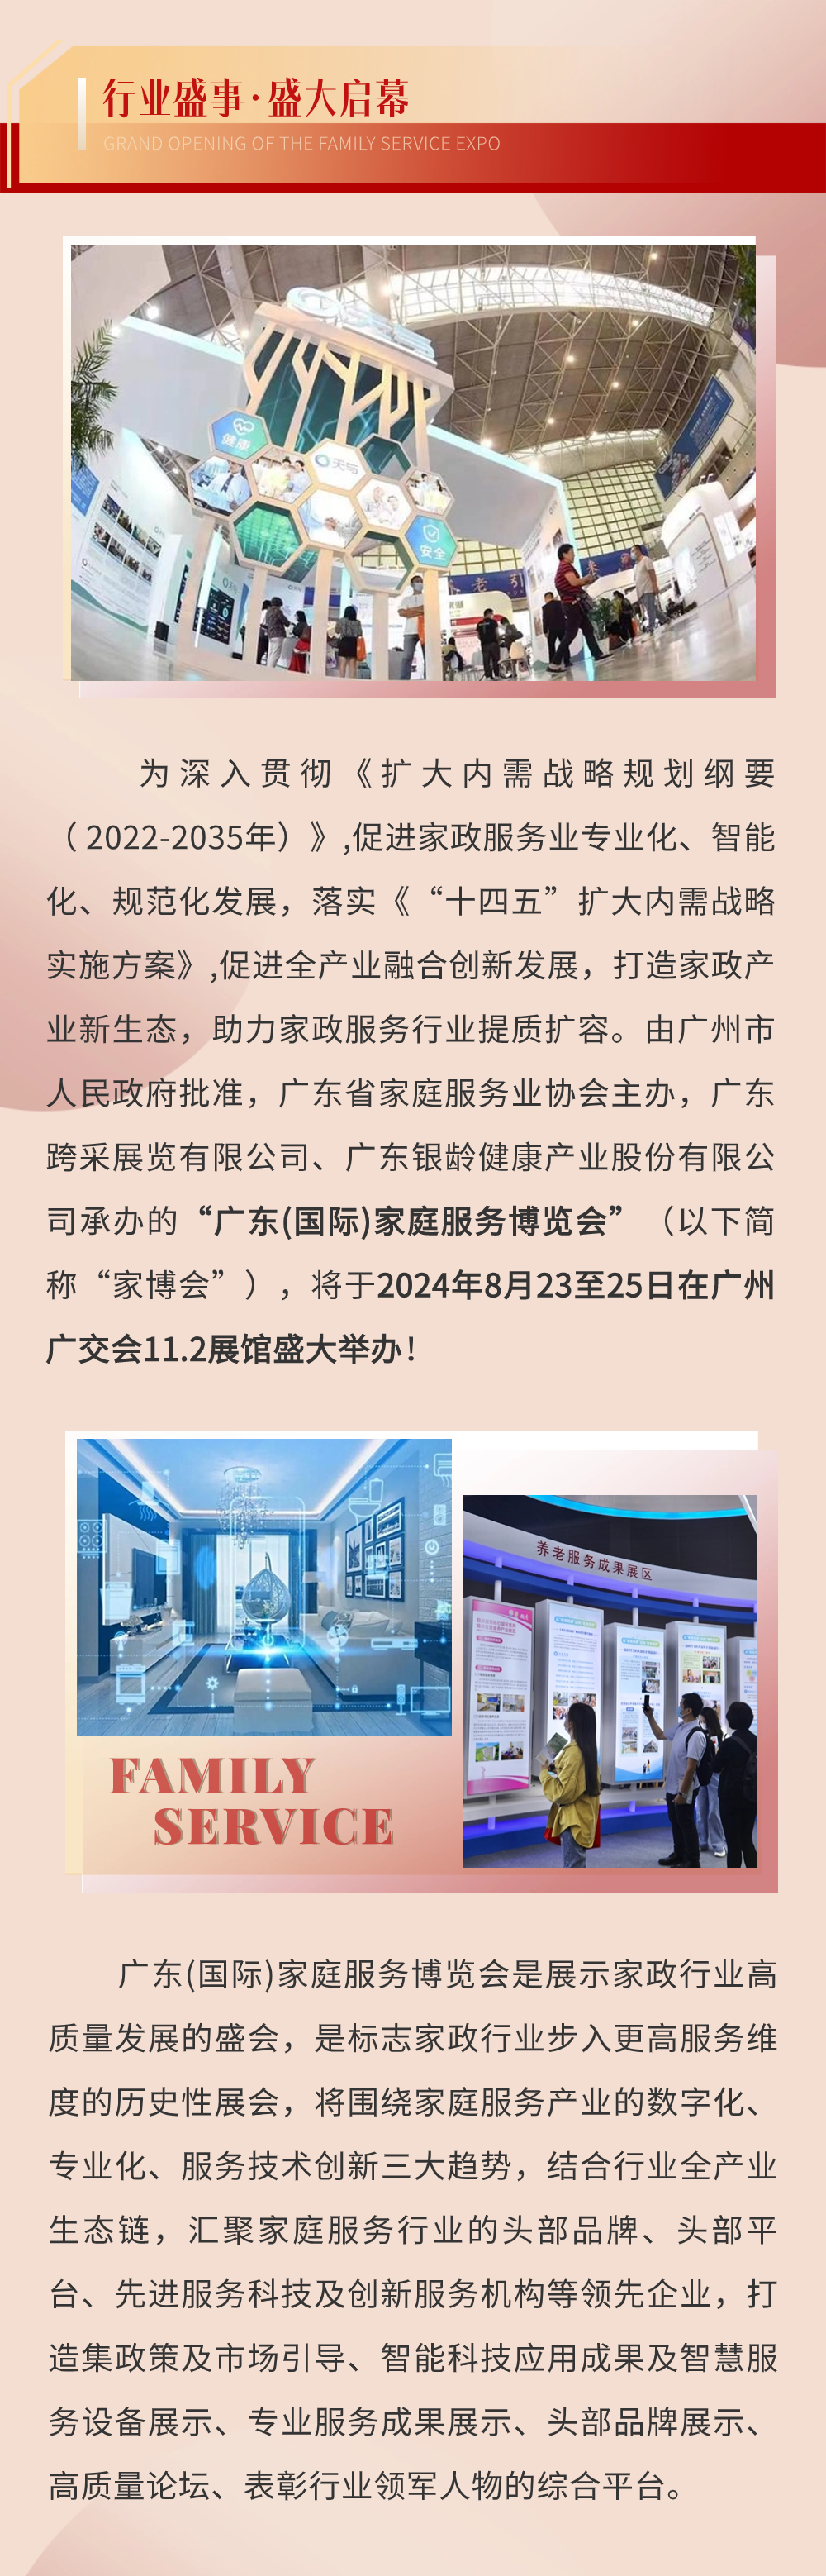 广东（国际）家庭服务博览会将于8月23日在广交会展馆盛大举办，是全国行业欢聚的盛会2.png